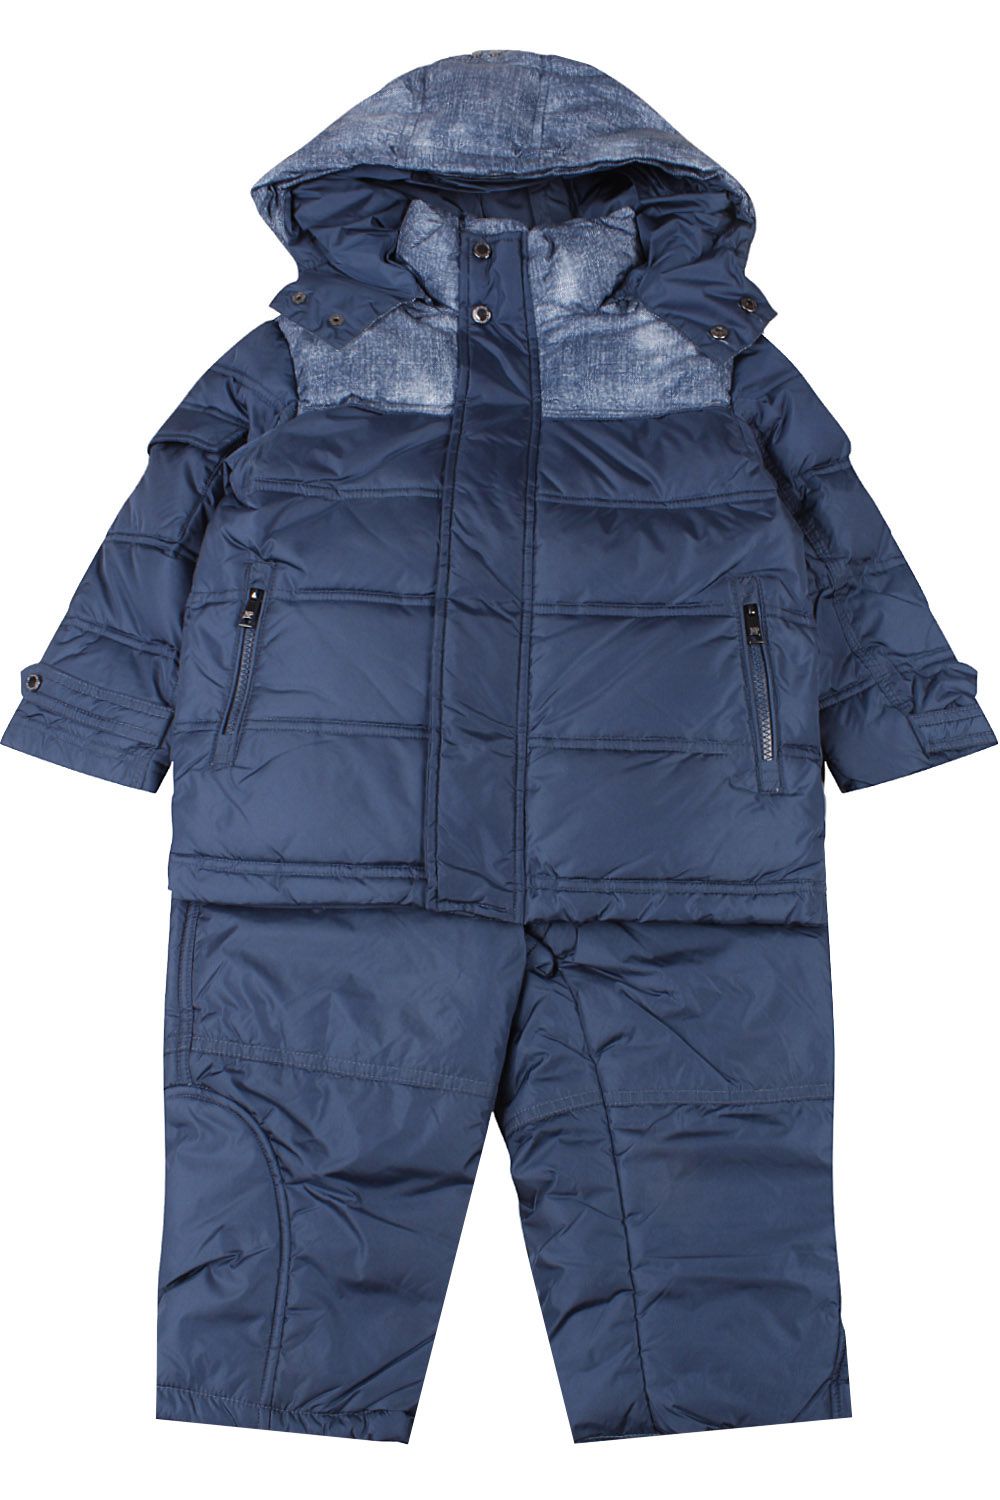 Куртка+полукомбинезон Noble People, размер 98, цвет синий 18607-339/1NO FUR Куртка+полукомбинезон - фото 1